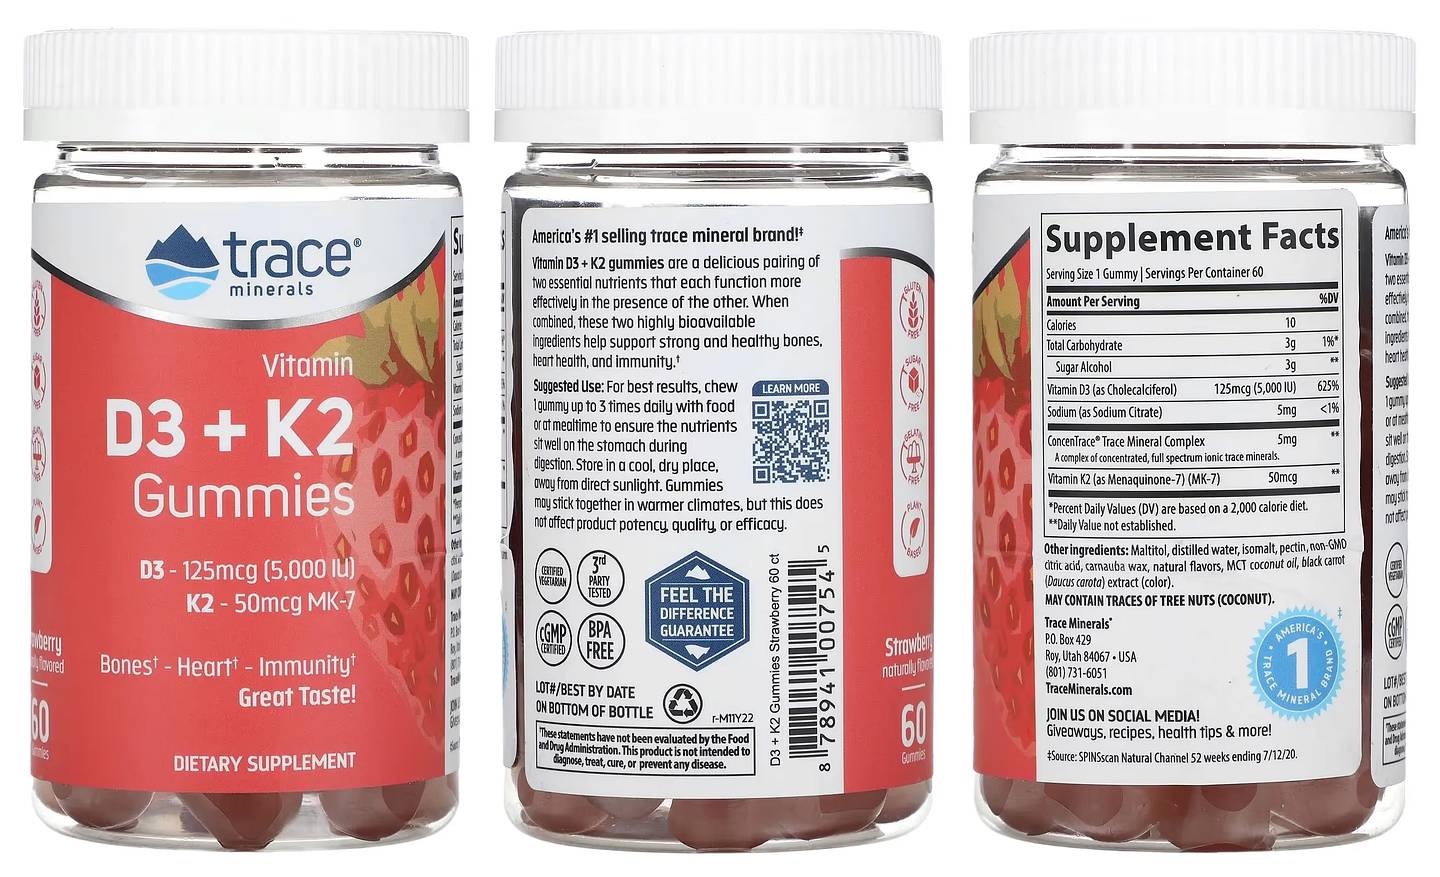 Trace Minerals, Vitamin D3 + K2 Gummies packaging